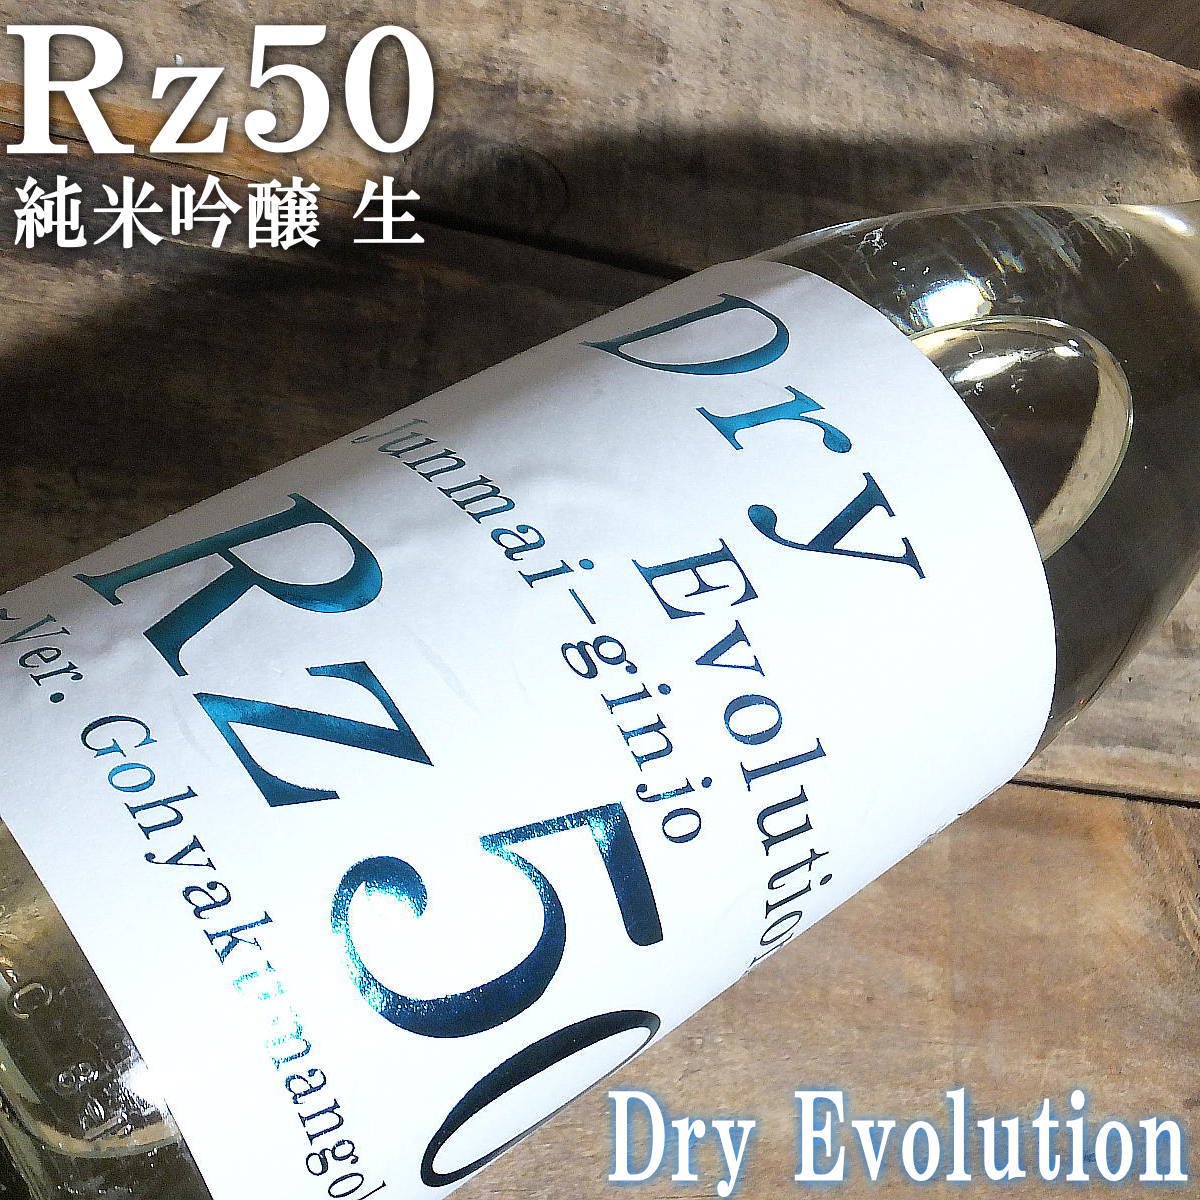 両関 Rz50 純米吟醸 生 Dry Evolution